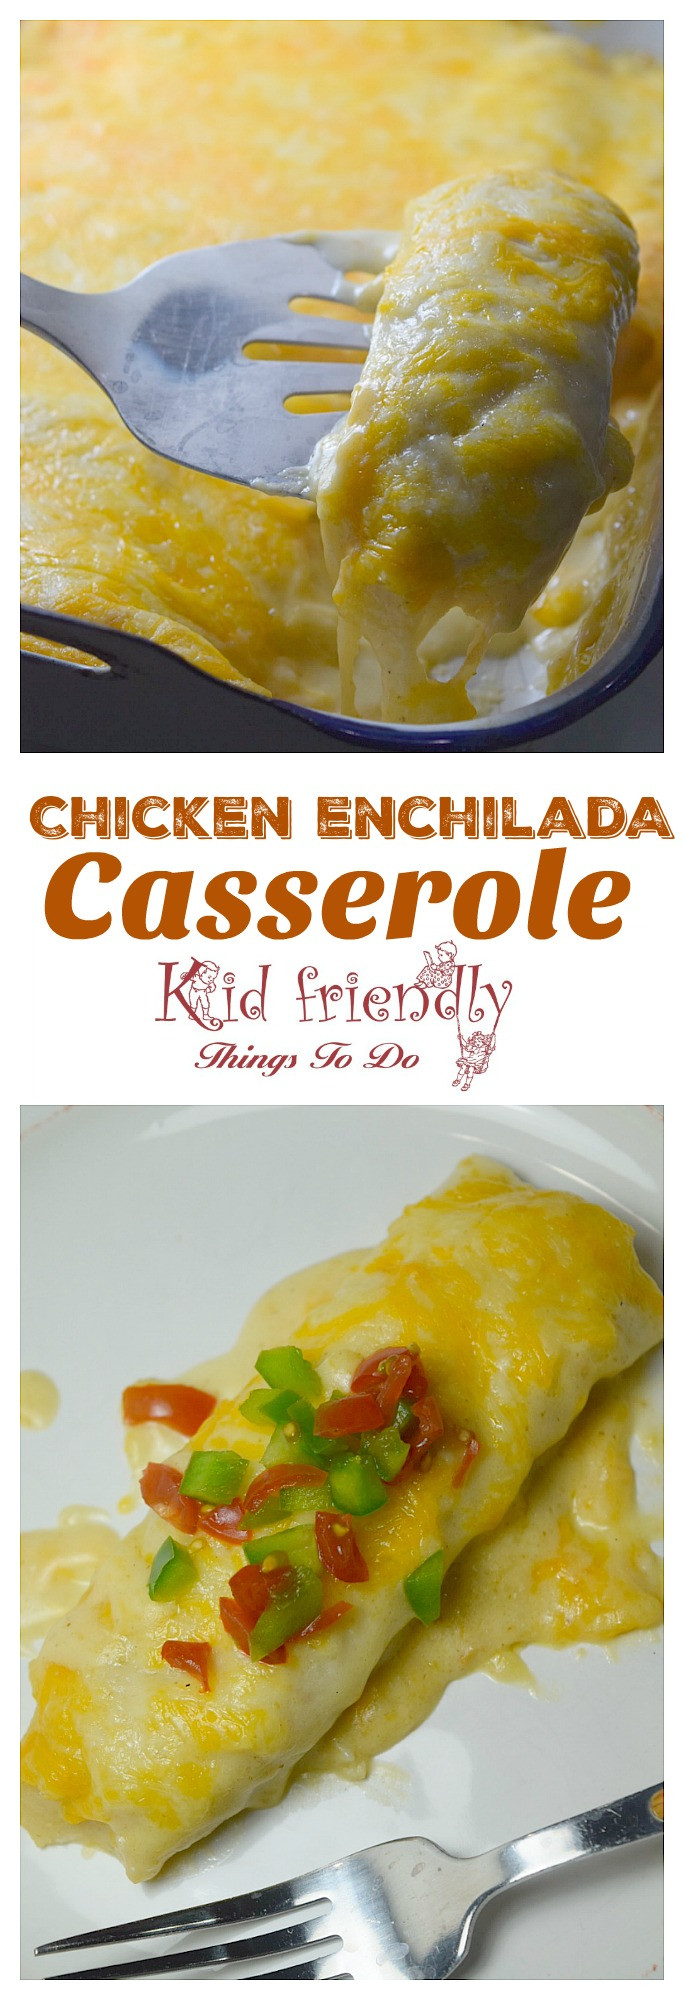 Chicken Enchilada Casserole Cream Cheese
 Chicken Enchilada Casserole with Sour Cream & Cheese Sauce